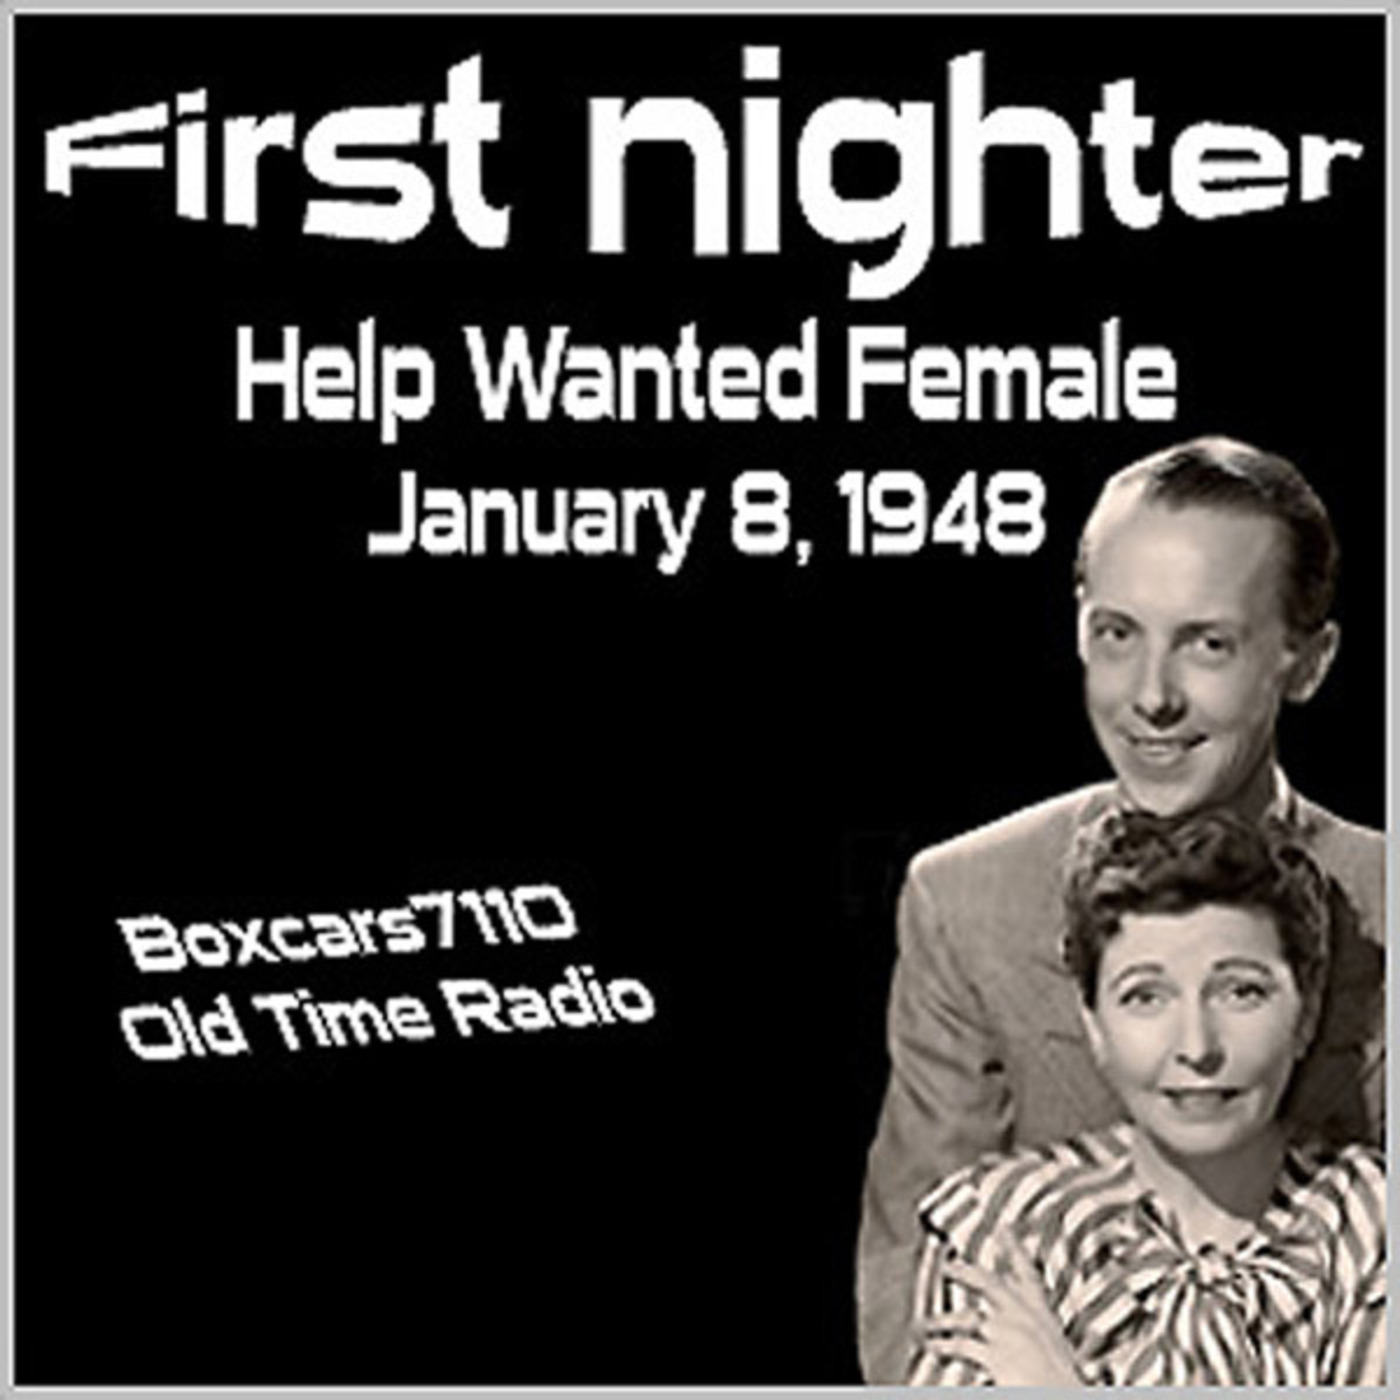 Episode 9654: First Nighter Program - 